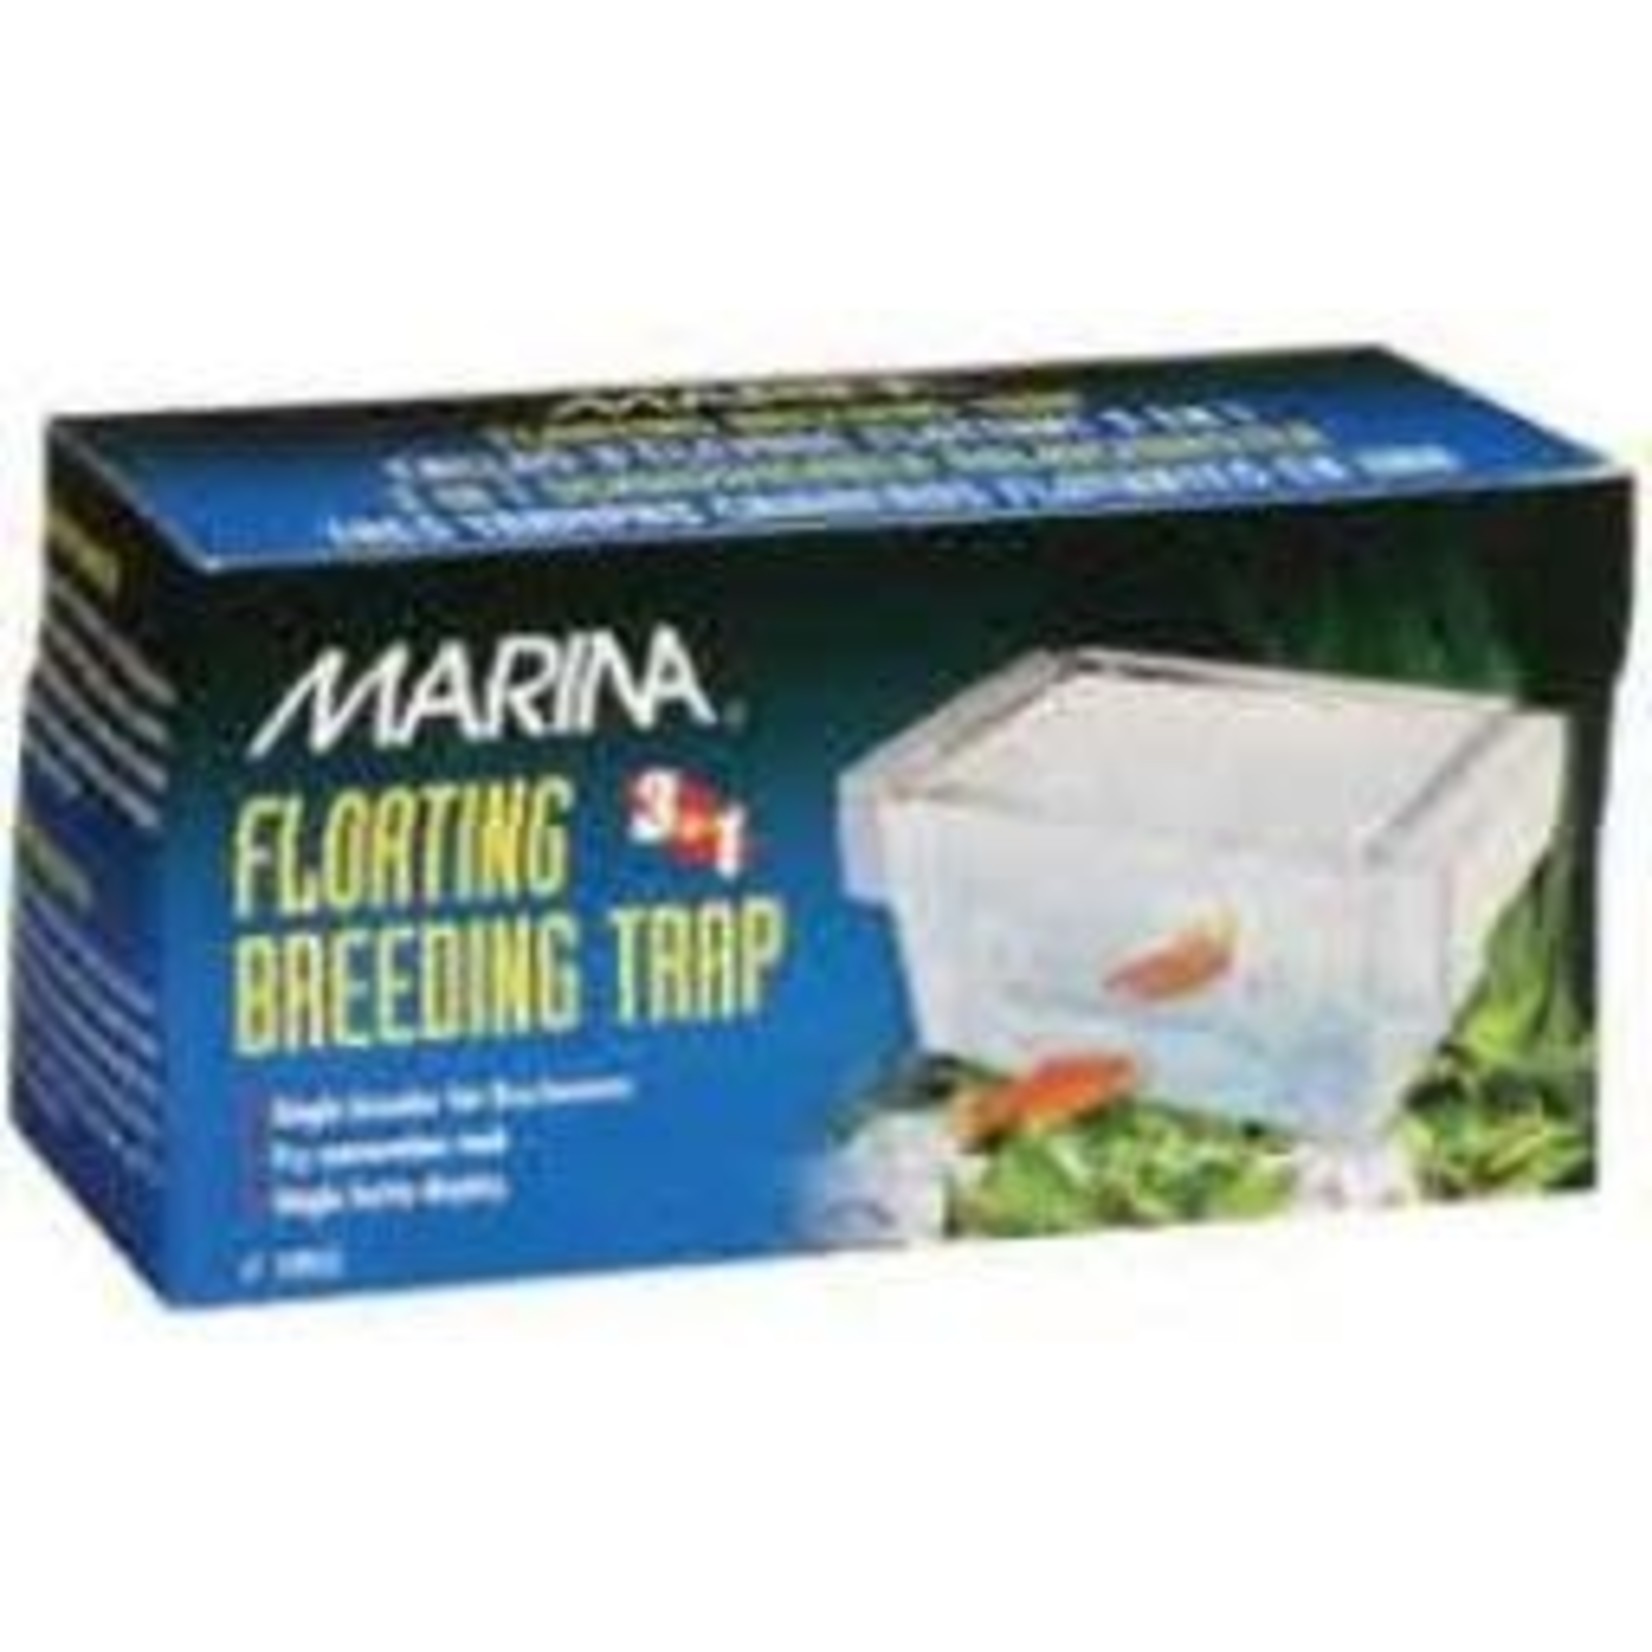 MARINA Marina 3 in 1 Breeding Trap